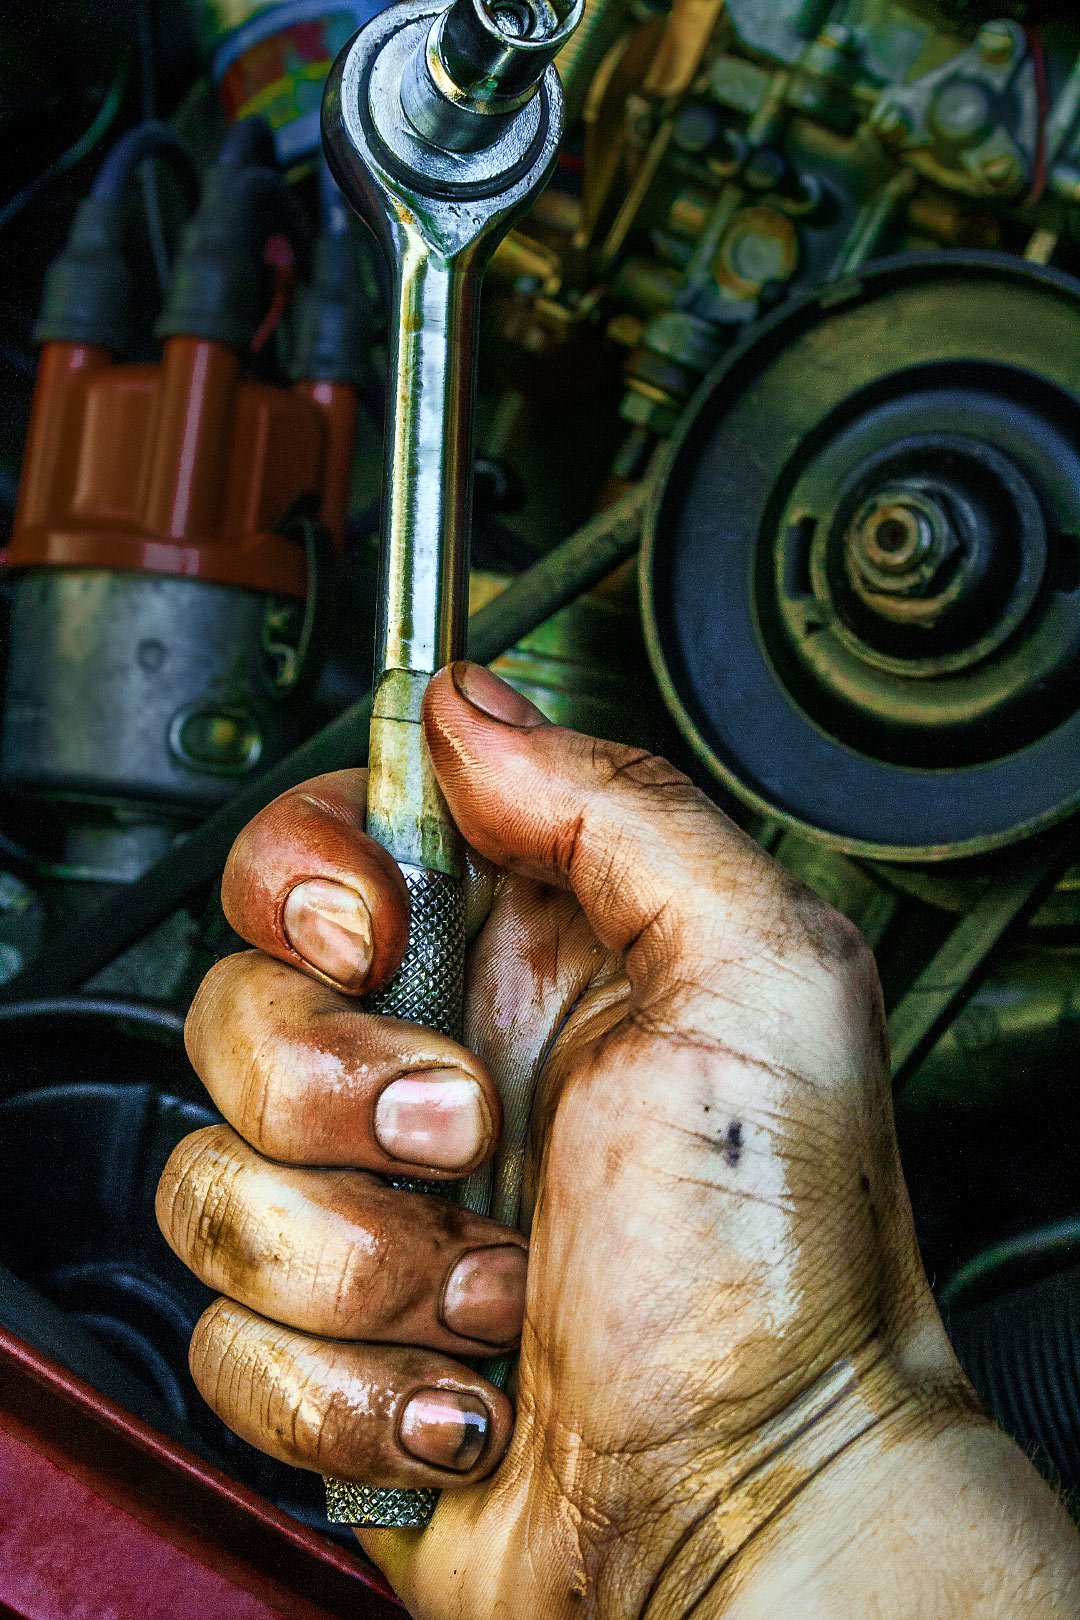 oil-change-socket-wrench-hand.jpg